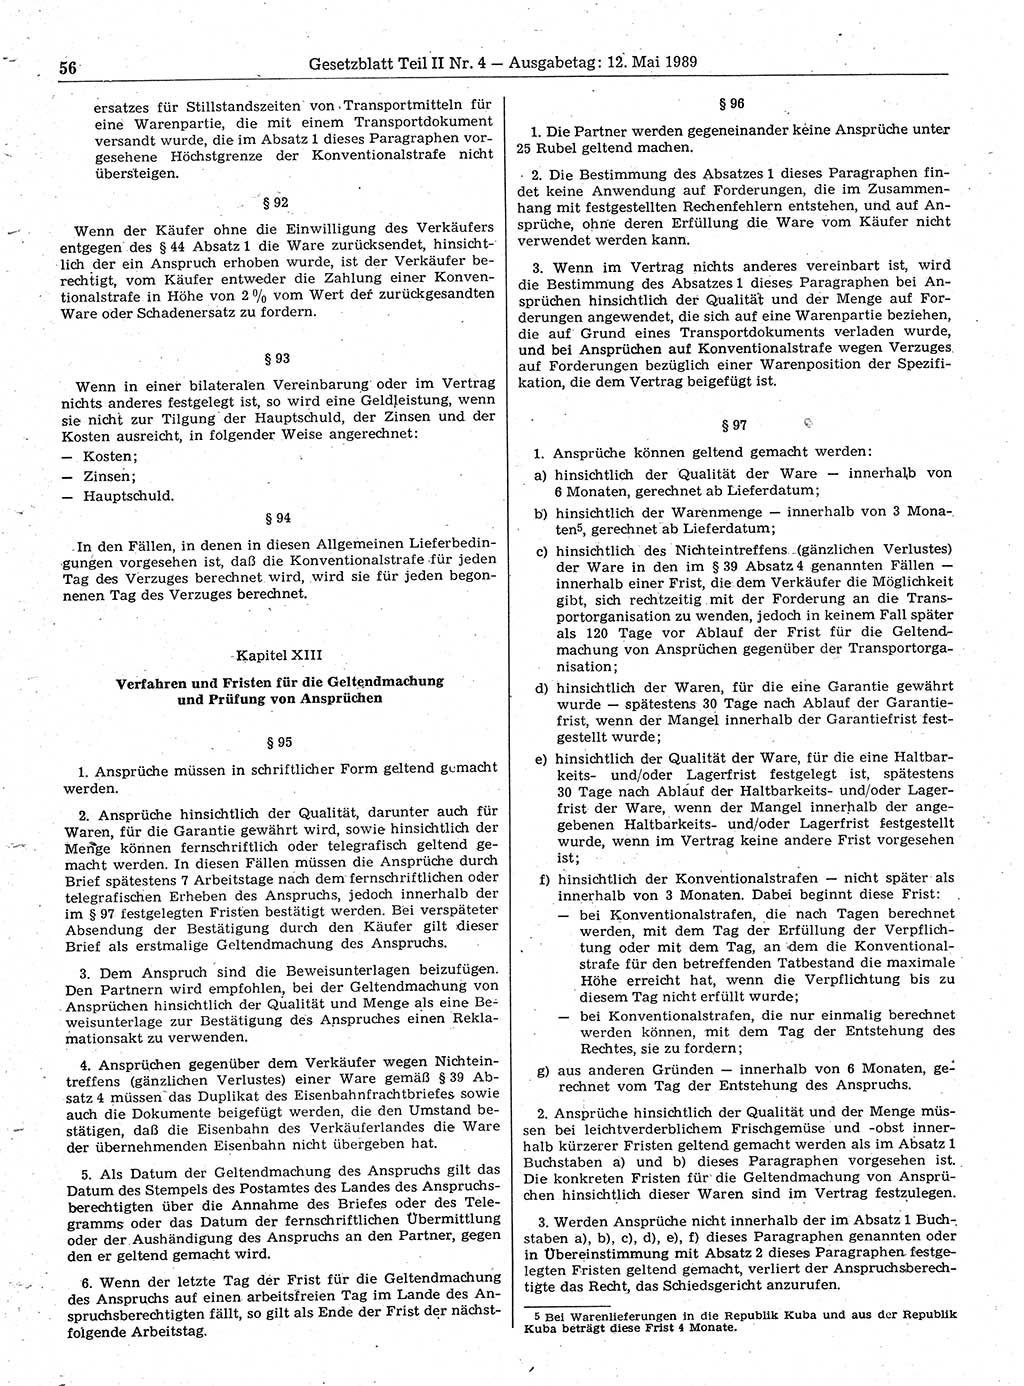 Gesetzblatt (GBl.) der Deutschen Demokratischen Republik (DDR) Teil ⅠⅠ 1989, Seite 56 (GBl. DDR ⅠⅠ 1989, S. 56)